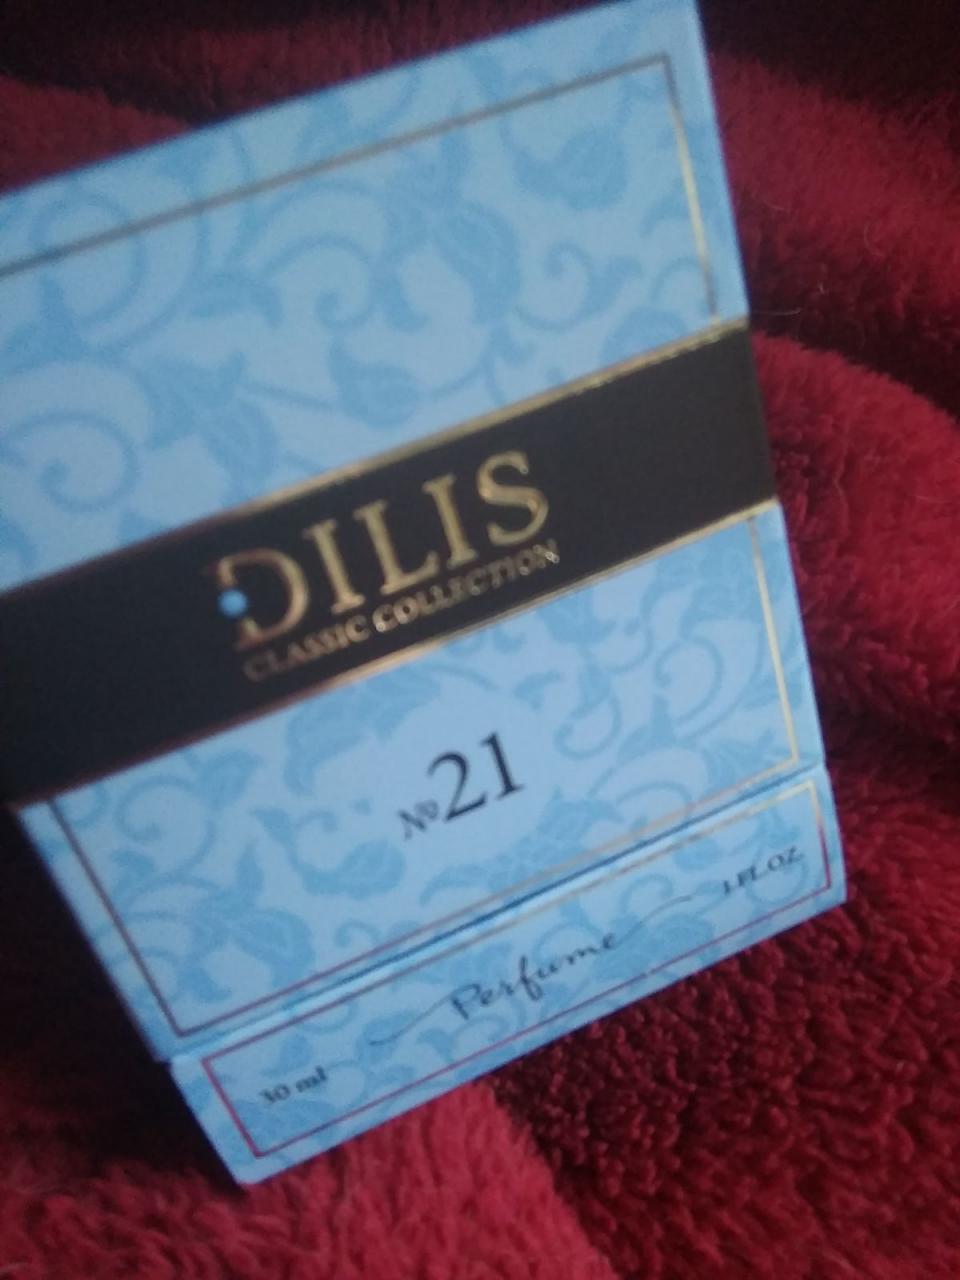 Отзыв на товар: Духи Classic Collection. Dilis Parfum. Вид 2 от 21.05.2023 